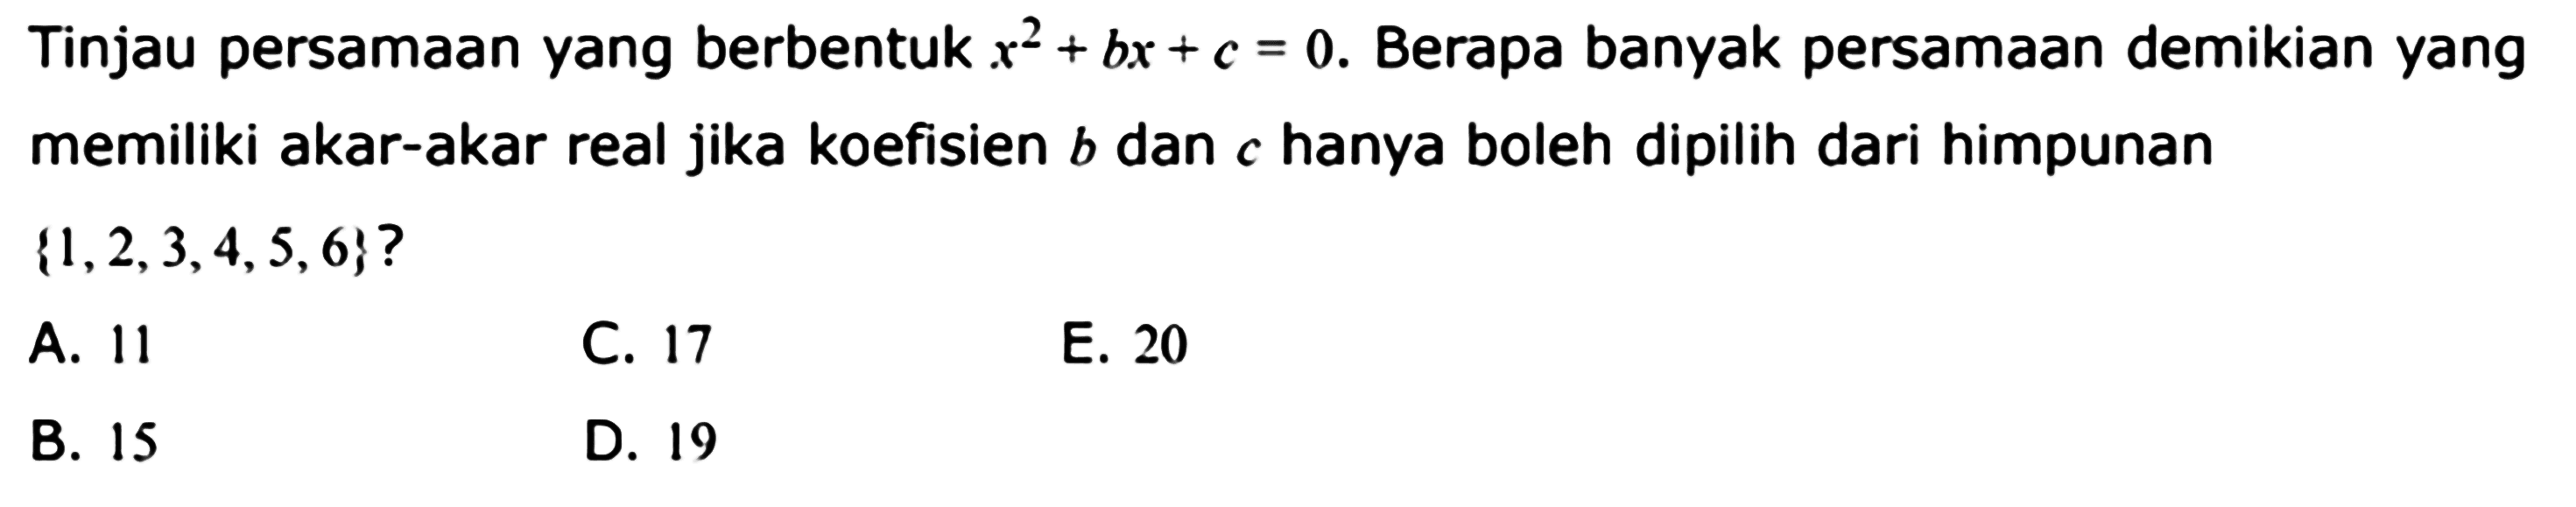 Tinjau persamaan yang berbentuk x^2+bx+c=0. Berapa banyak persamaan demikian yang memiliki akar-akar real jika koefisien b dan c hanya boleh dipilih dari himpunan {1,2,3,4,5,6}? 
